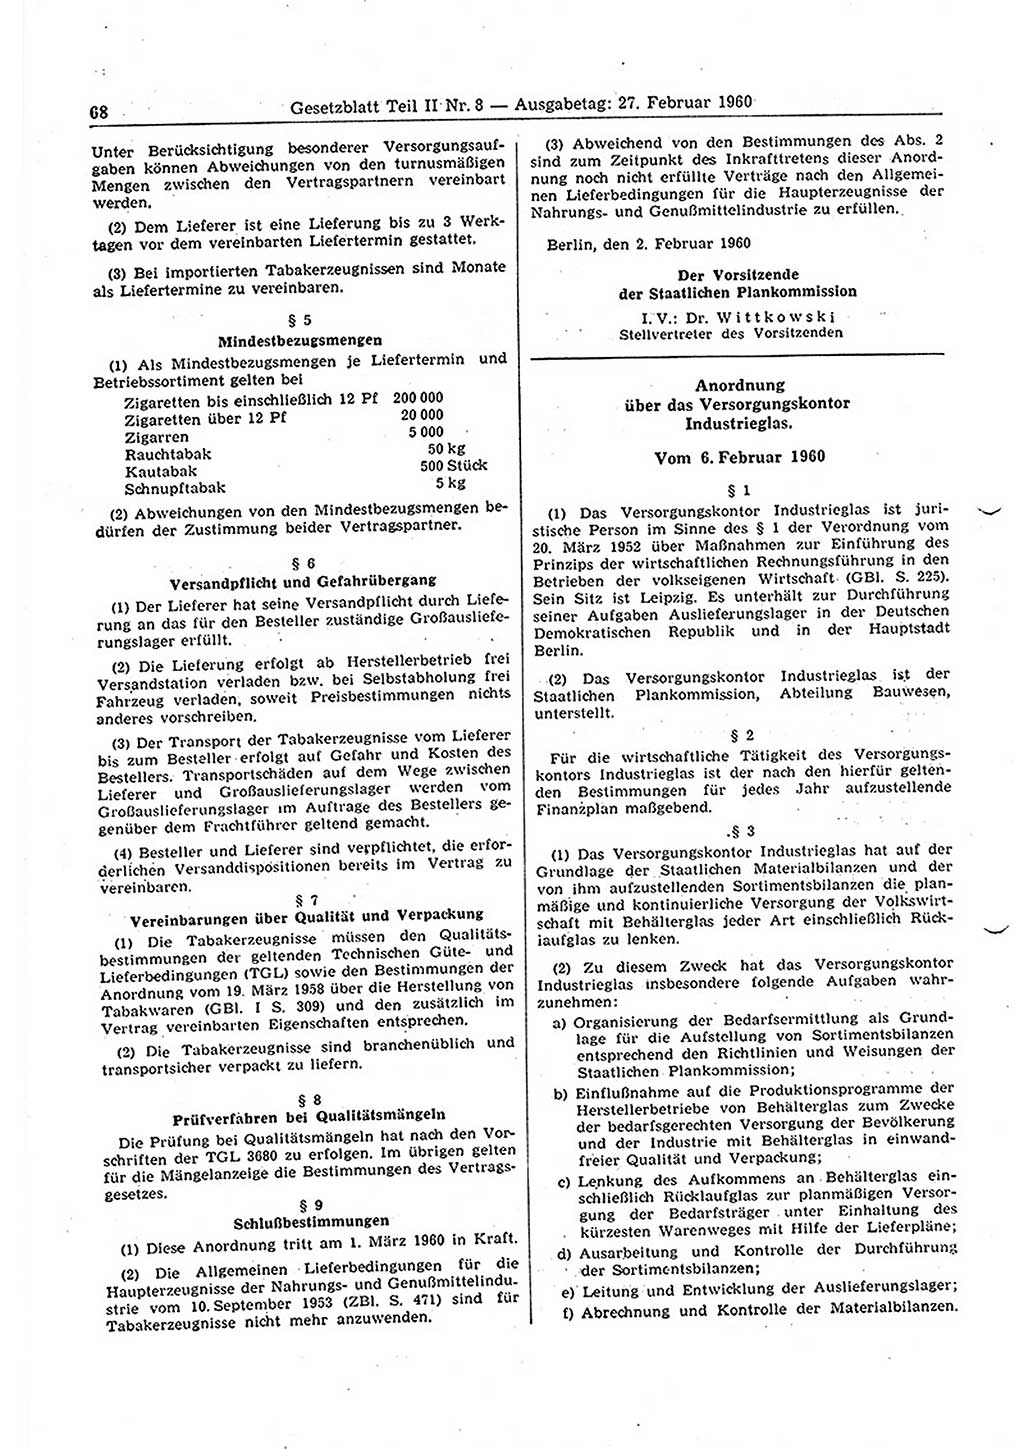 Gesetzblatt (GBl.) der Deutschen Demokratischen Republik (DDR) Teil ⅠⅠ 1960, Seite 68 (GBl. DDR ⅠⅠ 1960, S. 68)